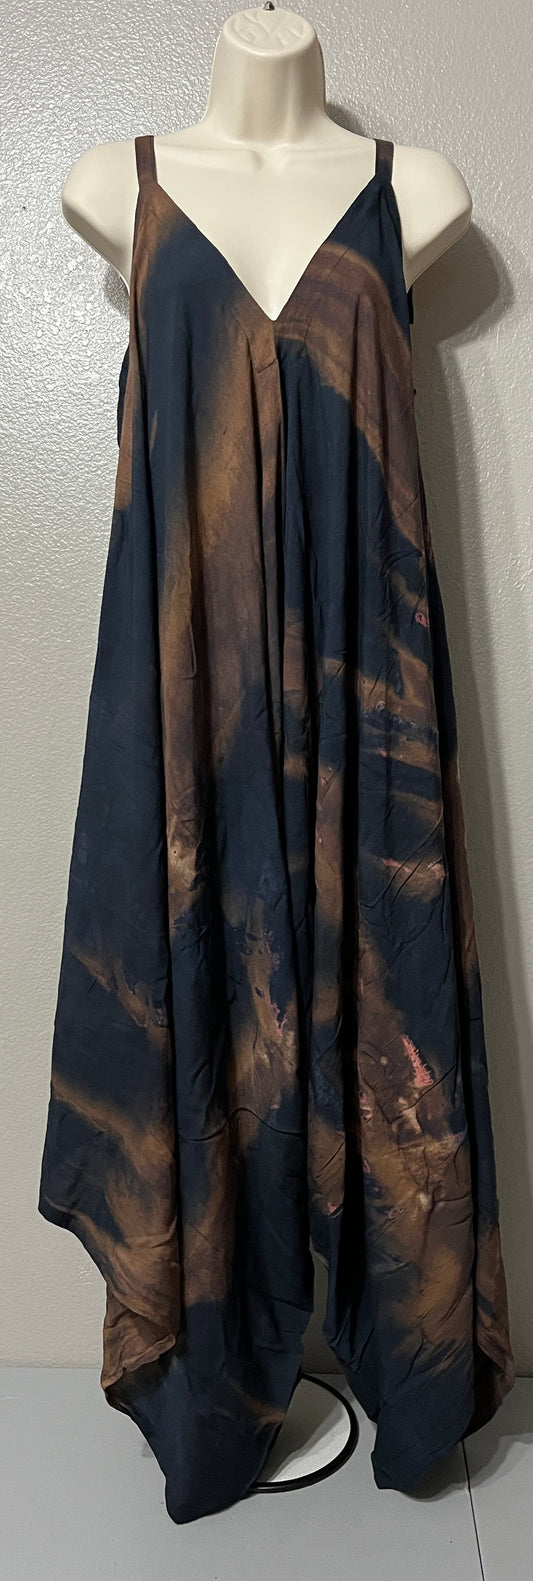 Women’s Navy Blue and Tan Tie-Dye Romper